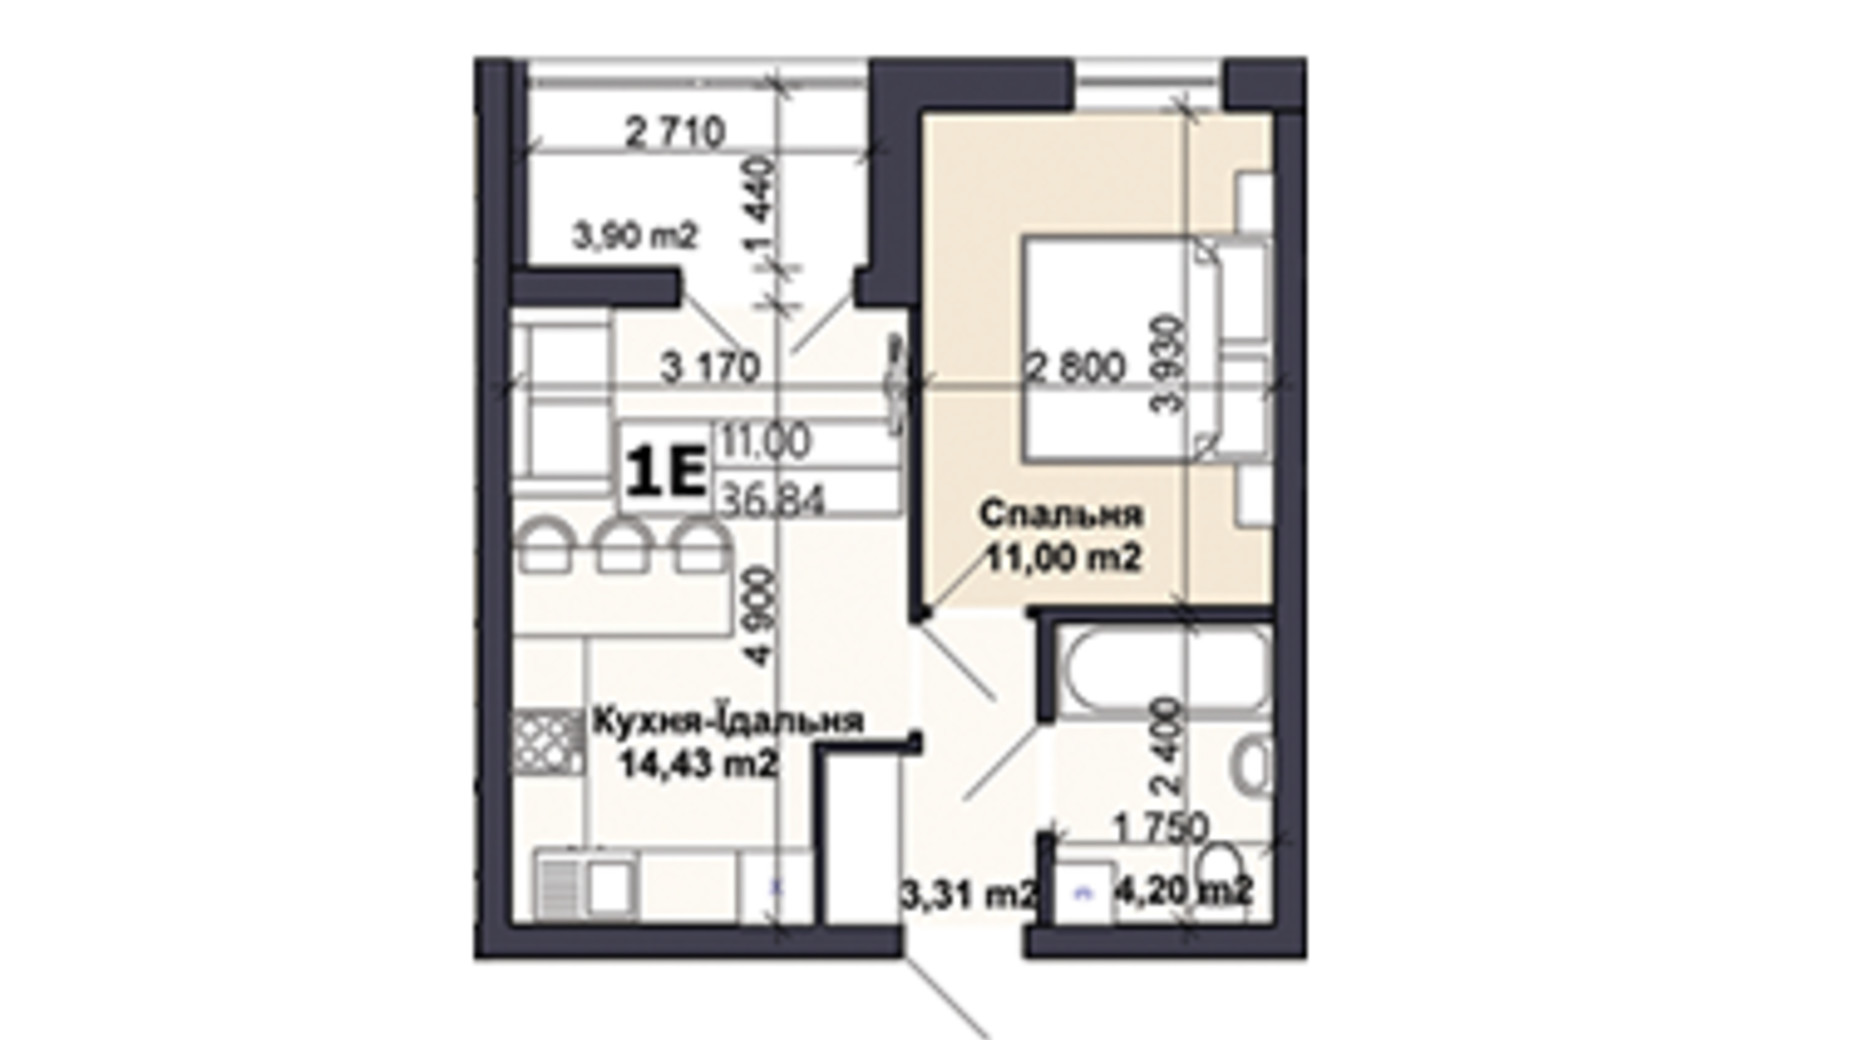 Планировка 1-комнатной квартиры в ЖК Саме той 36.84 м², фото 585409